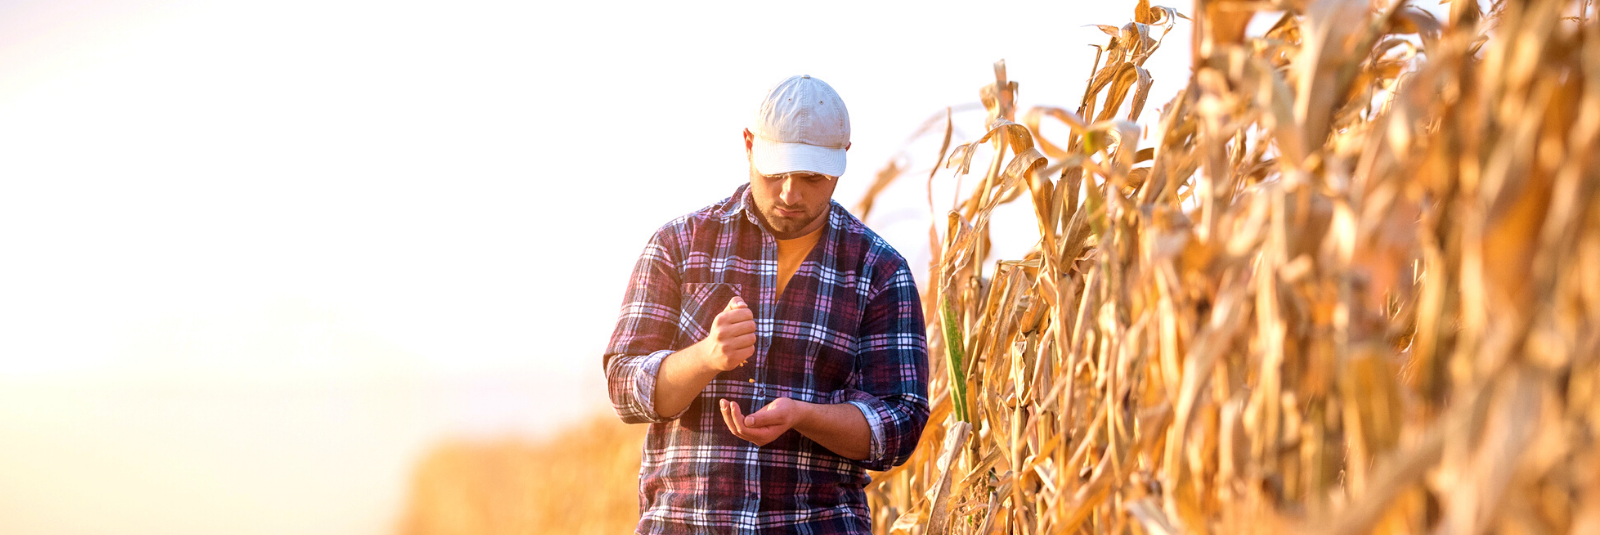 a farmer walking through a corn crop field